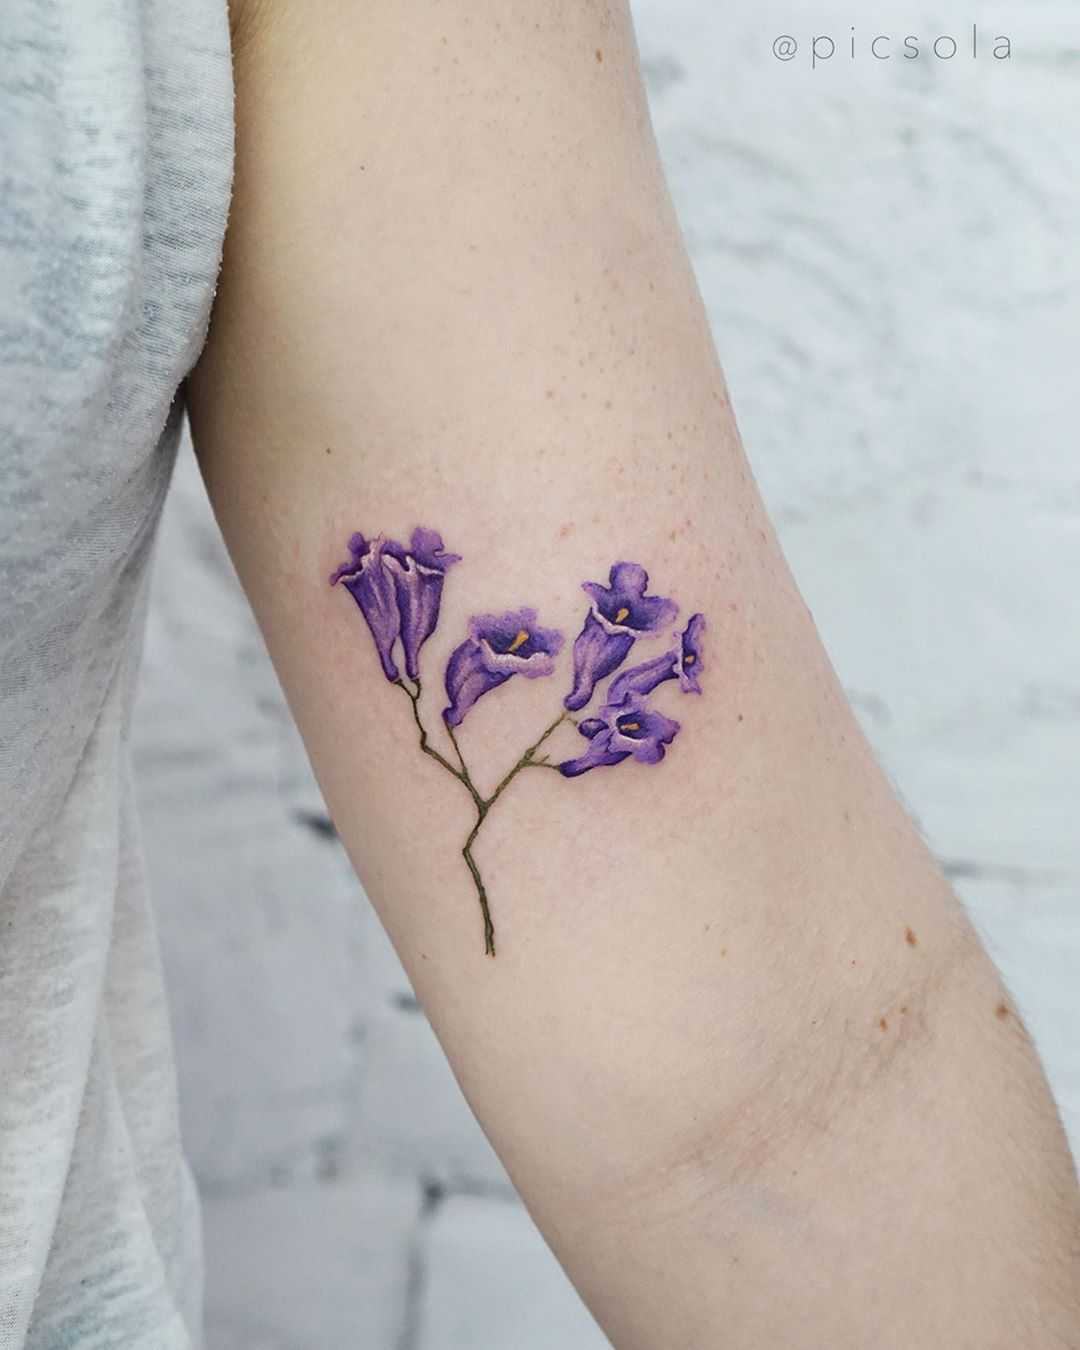 Jacaranda flowers tattoo by tattooist picsola